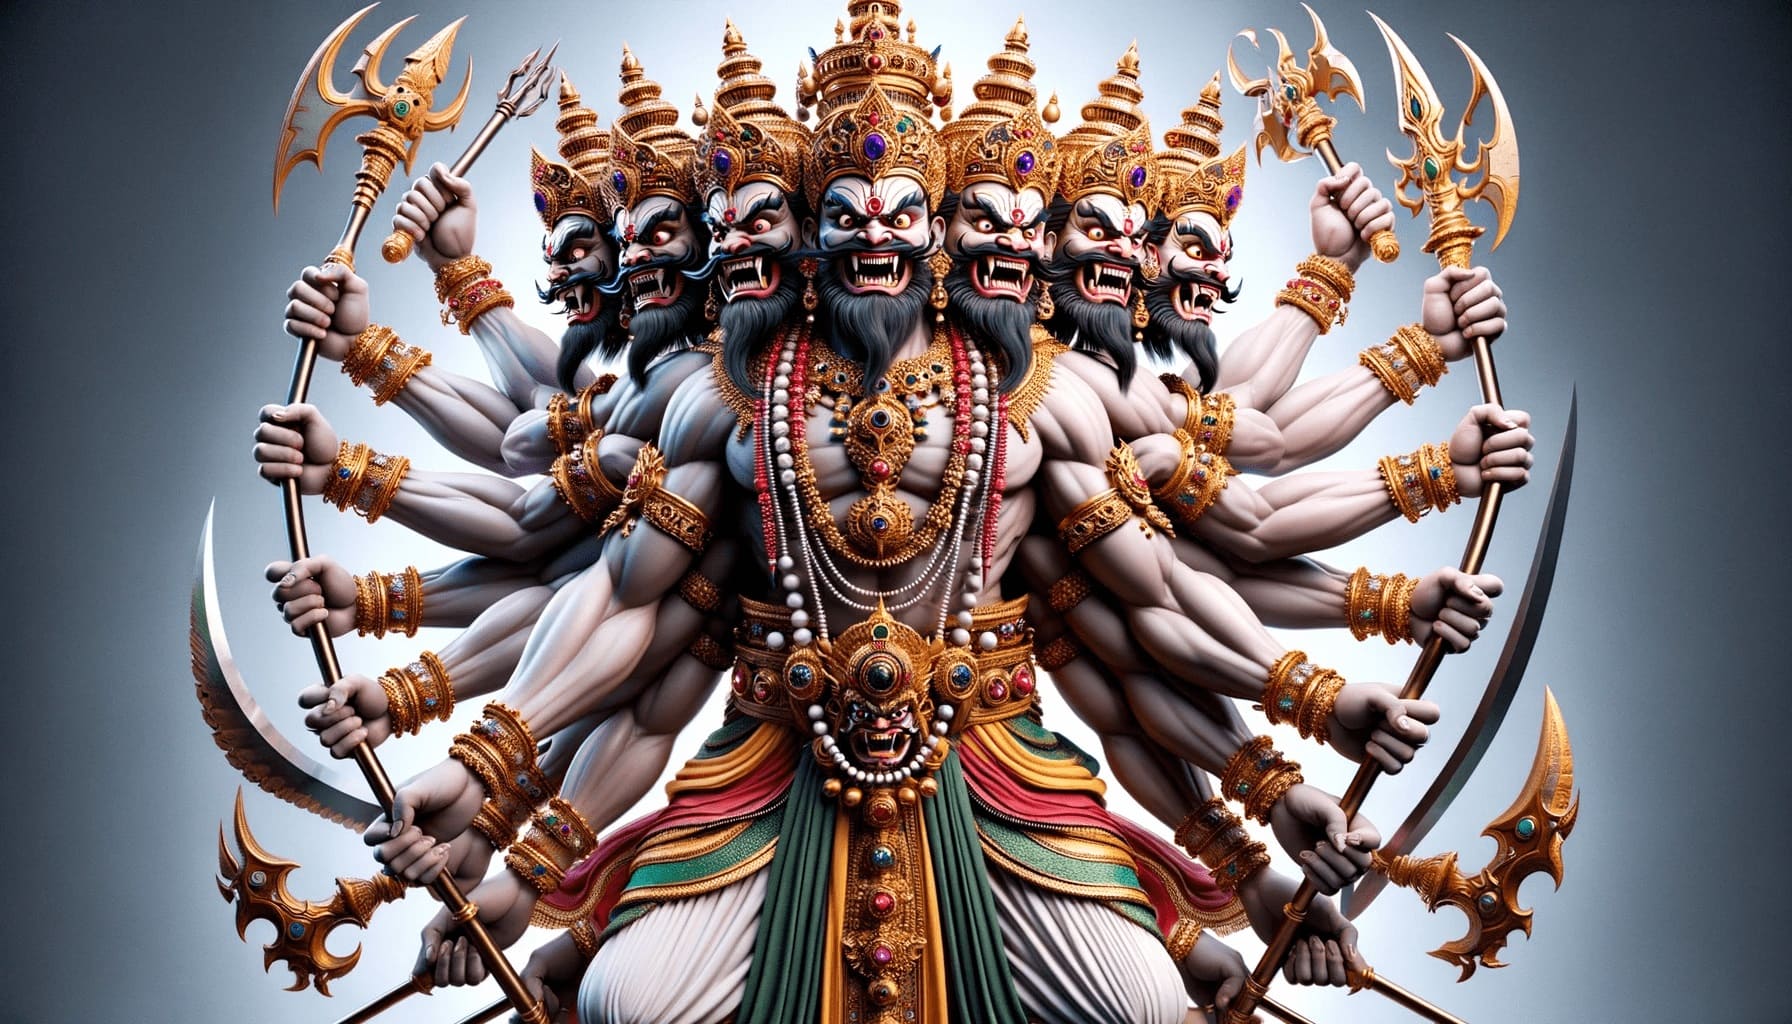 लंका के महान राजा रावण का पूर्ण शरीर वाली मुद्रा में उसकी क्रोधपूर्ण दृष्टि को प्रदर्शित करते हुए प्रस्तुतीकरण। उसके कई सिर अलग-अलग दिशाओं में मुड़े हुए हैं, जिनमें से प्रत्येक पर कठोर दृष्टि है। रावण की कई भुजाओं में विभिन्न पारंपरिक हथियार हैं, और उसकी पोशाक रत्नों और एक राजसी मुकुट से सुशोभित है। पृष्ठभूमि उसके प्रभुत्व को उजागर करने के लिए डिज़ाइन की गई है।